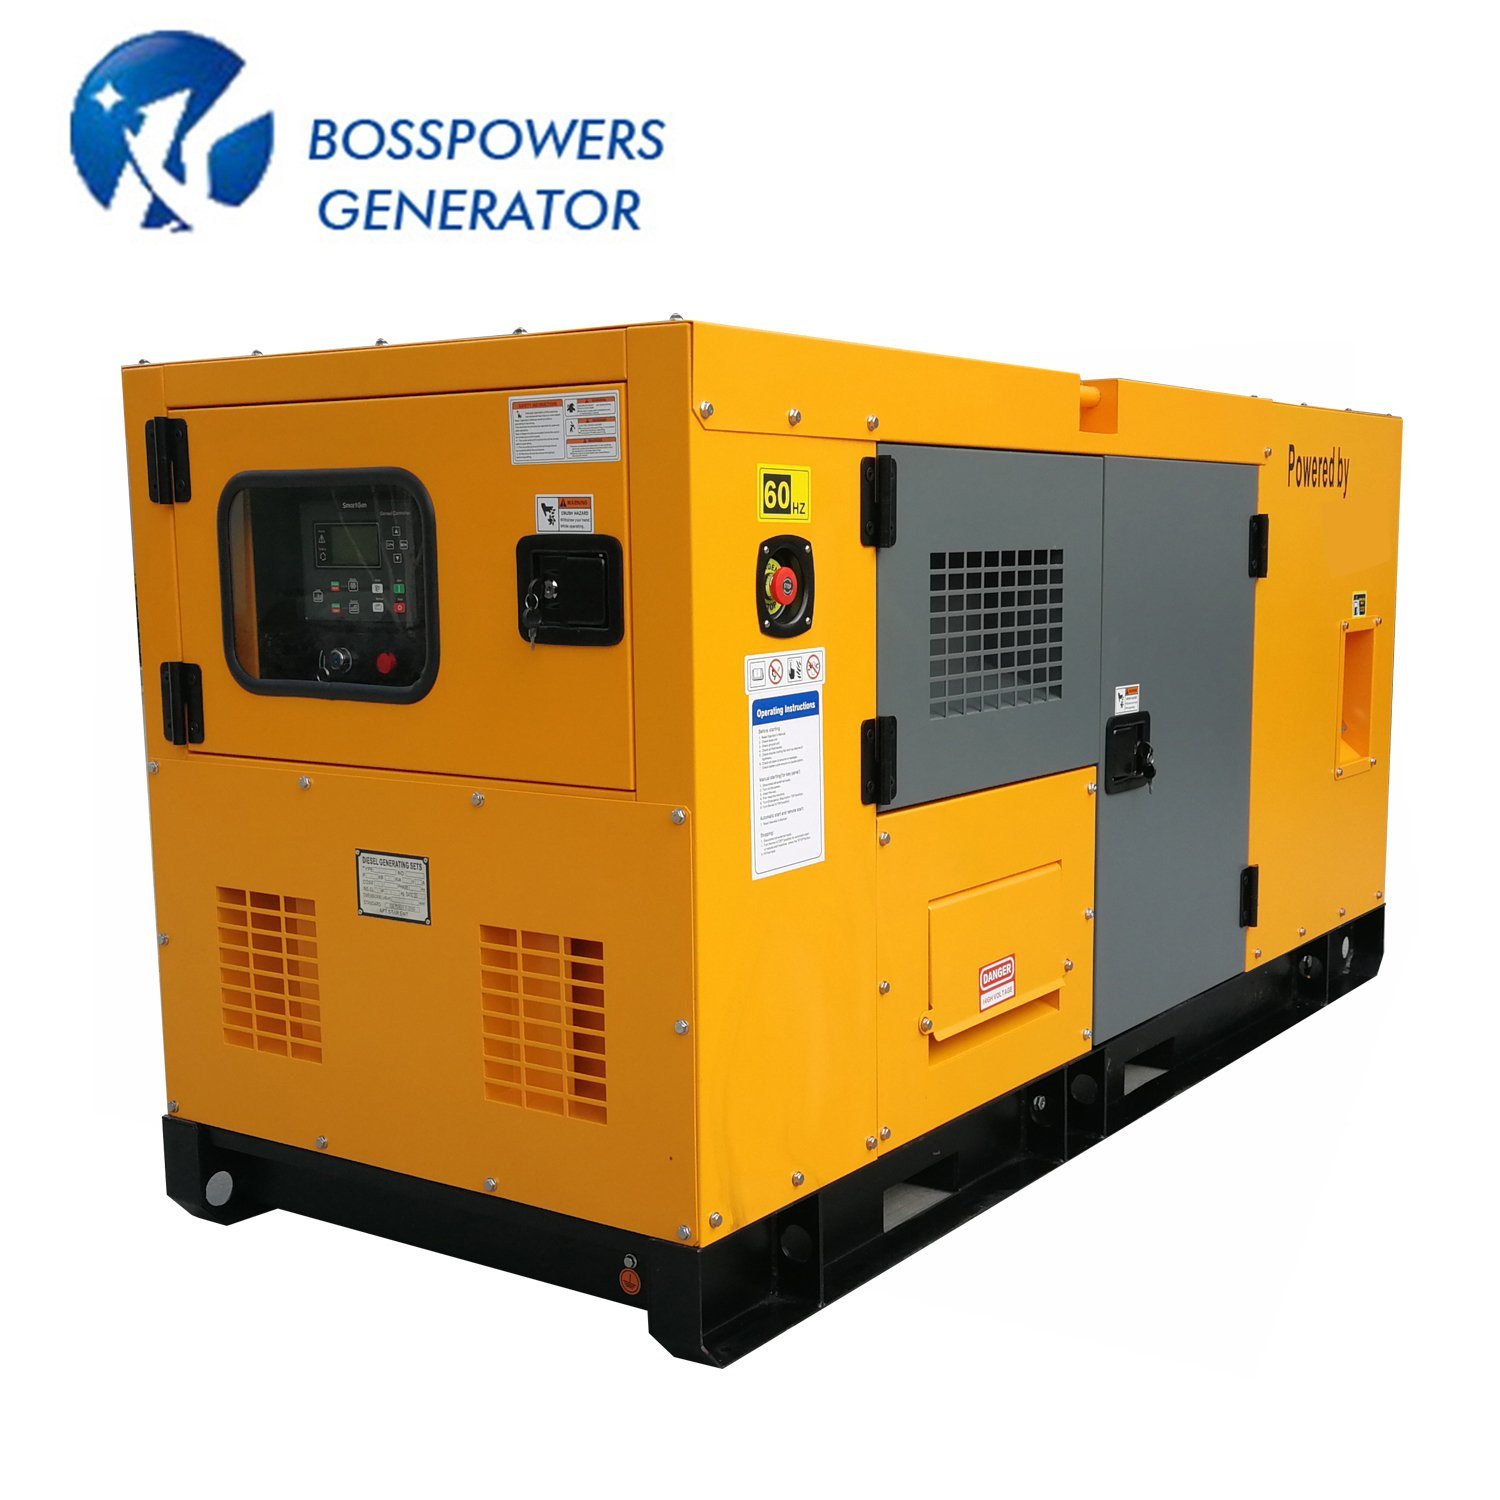 30kVA-400kVA Yto Power Diesel Generator Set Price